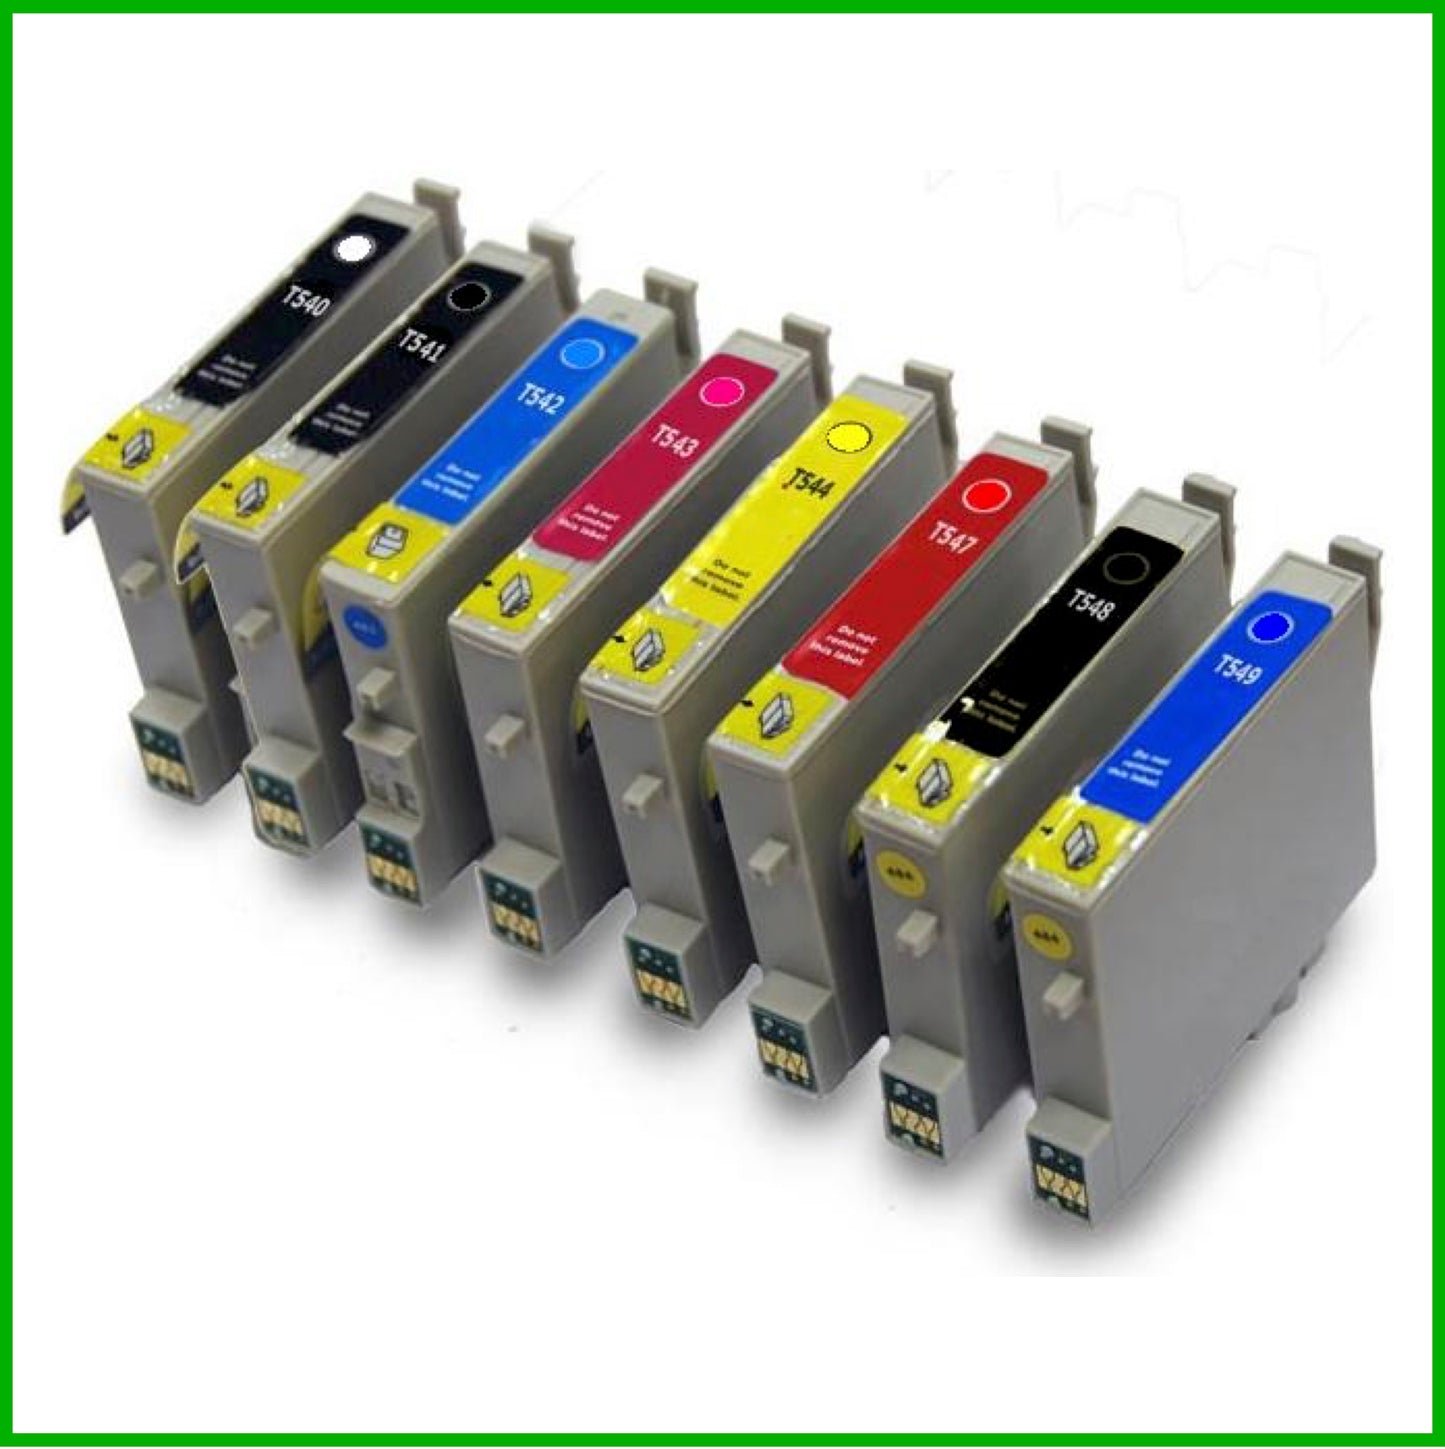 Compatible Epson 540/541/542/543/544/547/548/549 Multipack Ink Cartridges GL/PBK/C/M/Y/R/BK/BL (Frog)